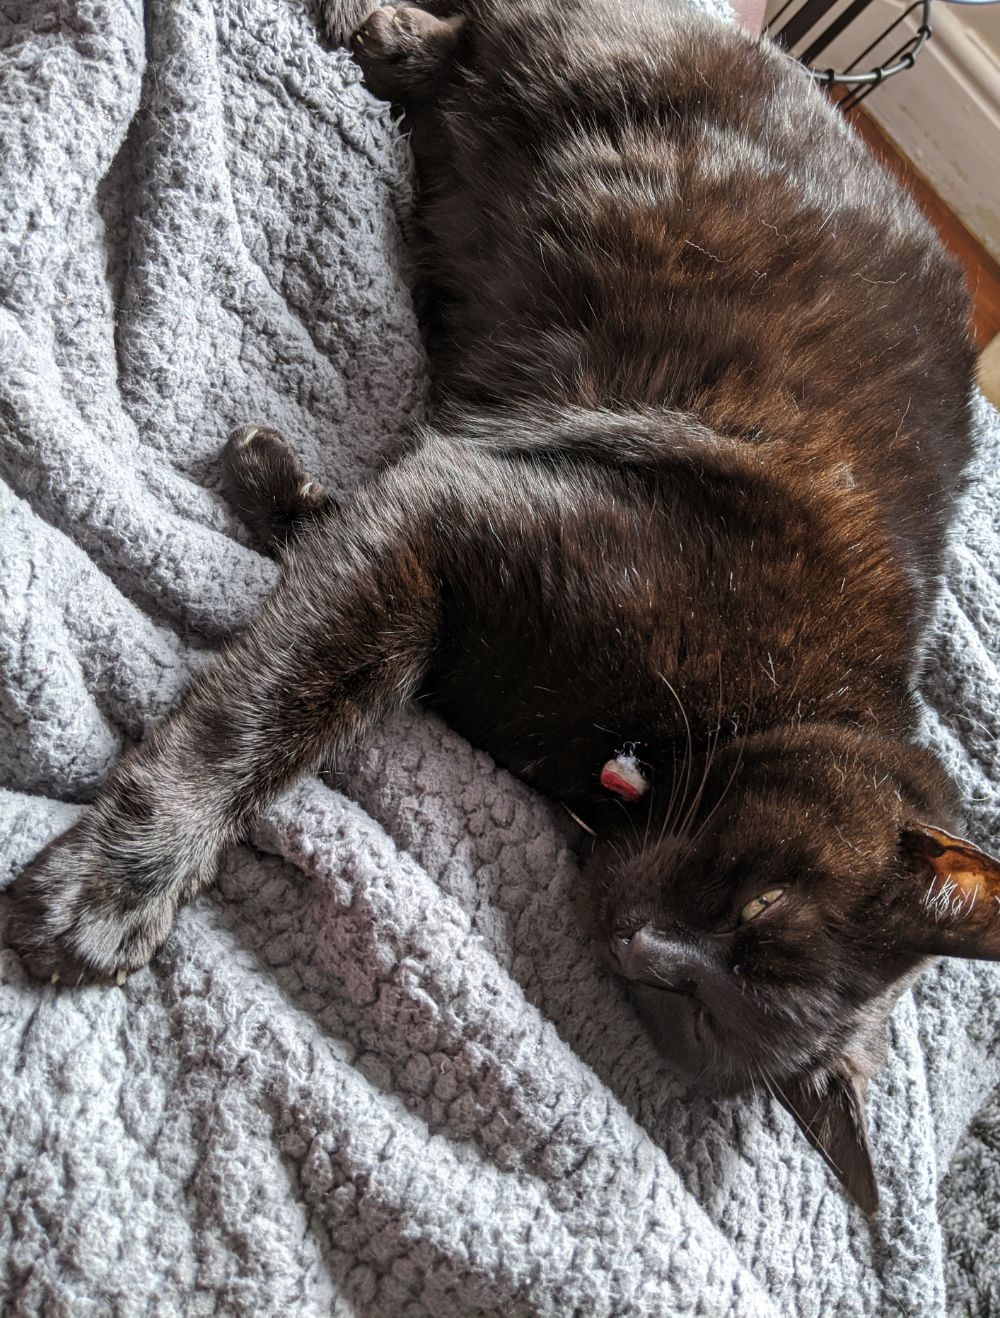 Black cat lying on grey blanket, looking very sleepy